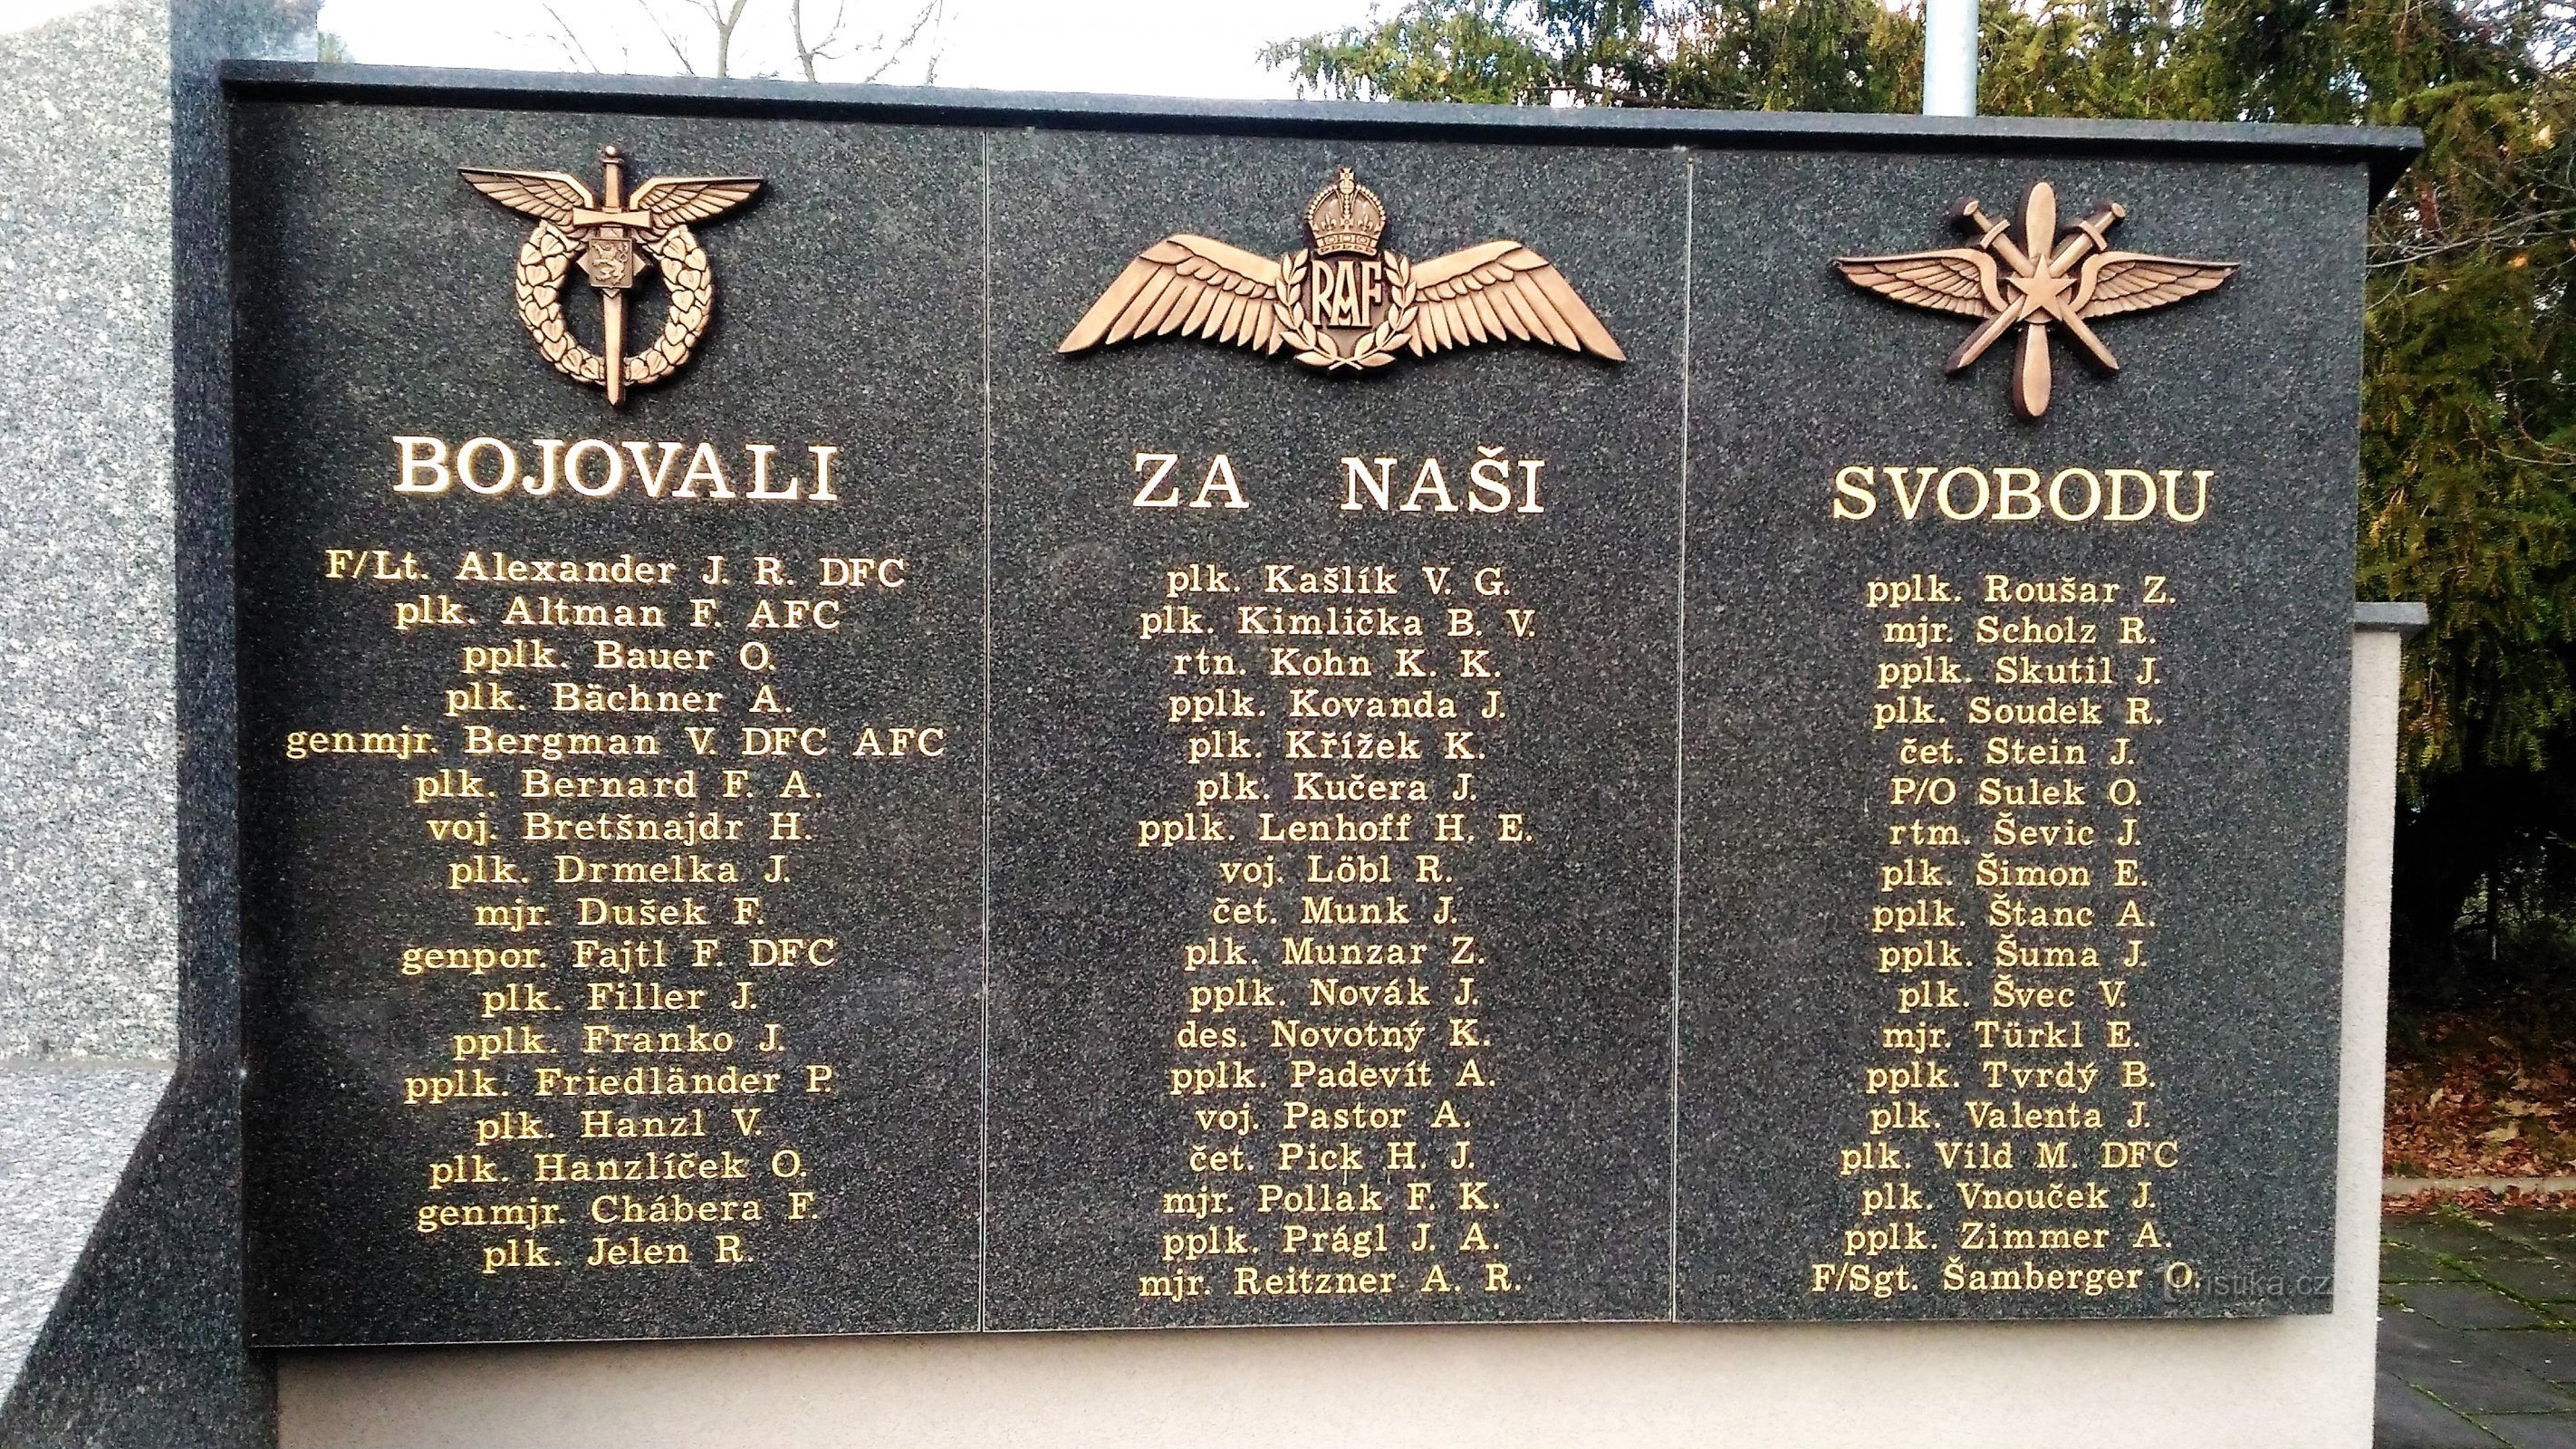 Đài tưởng niệm các phi công hy sinh II. chiến tranh thế giới.